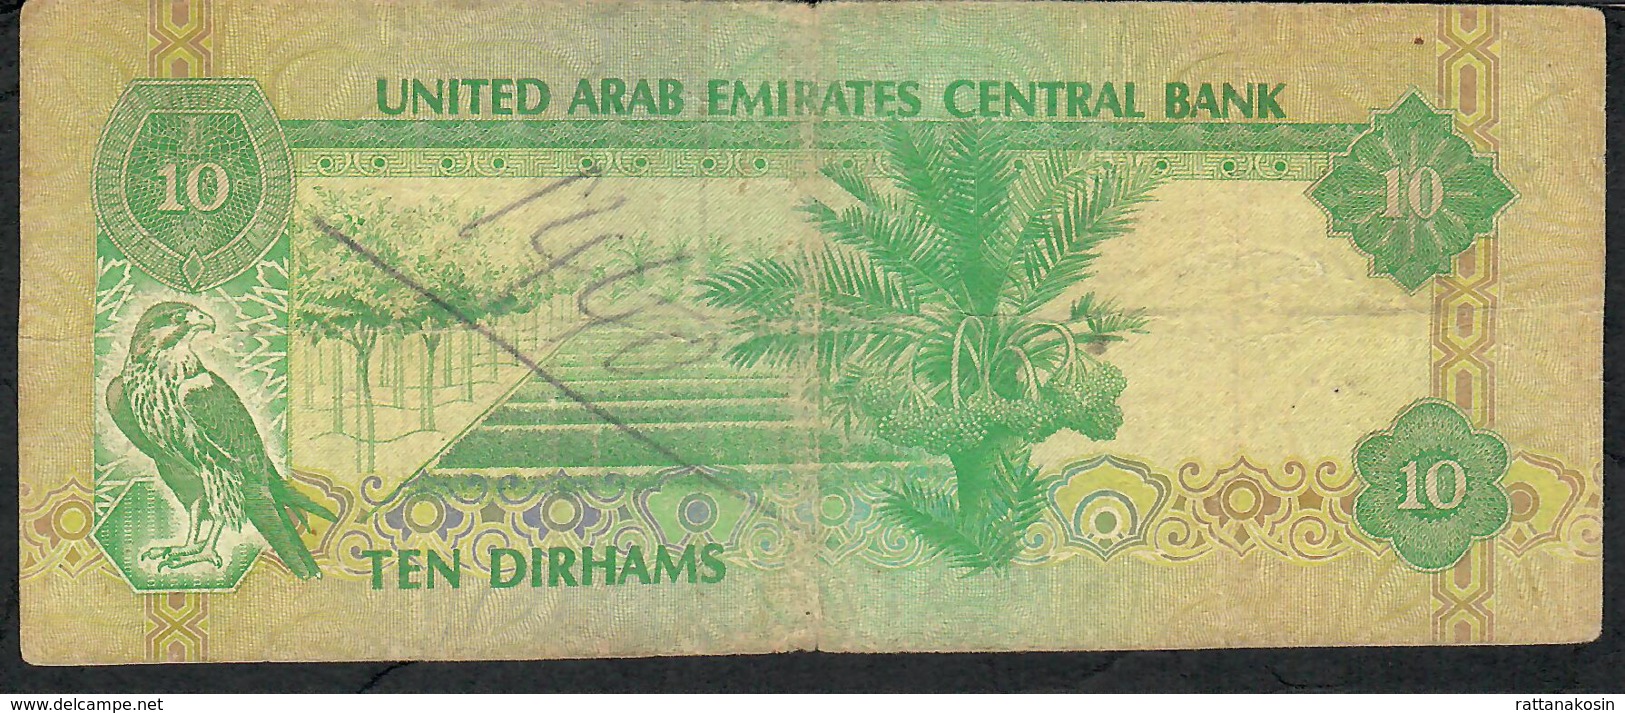 U.A.E. P8 10 DIRHAMS 1982 FINE - Emirati Arabi Uniti